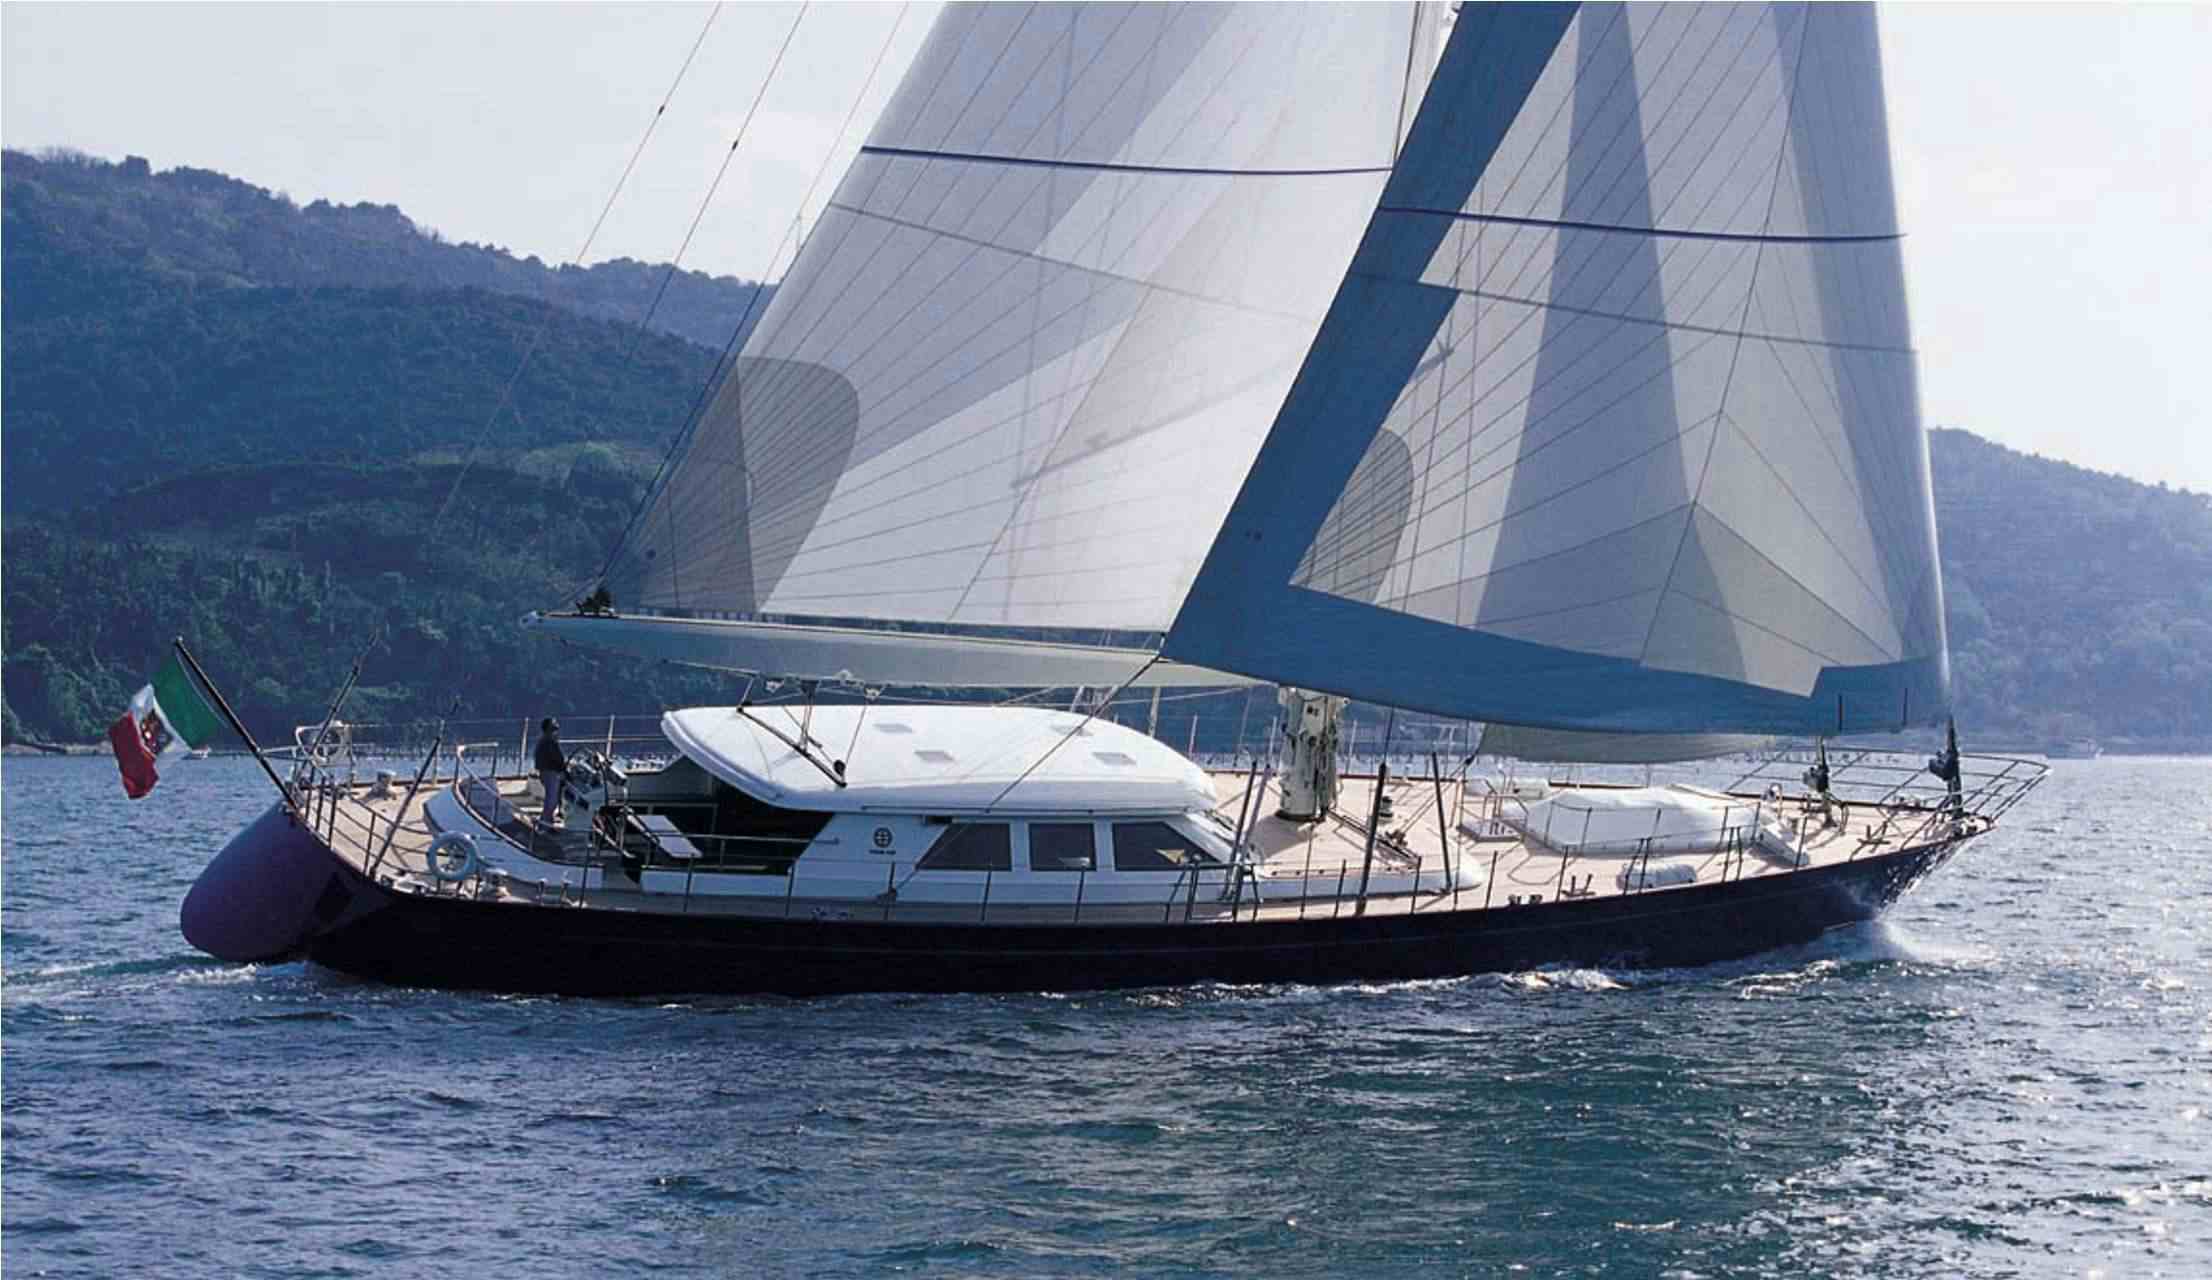 HERITAGE M - Yacht Charter Monaco & Boat hire in Fr. Riviera & Tyrrhenian Sea 1